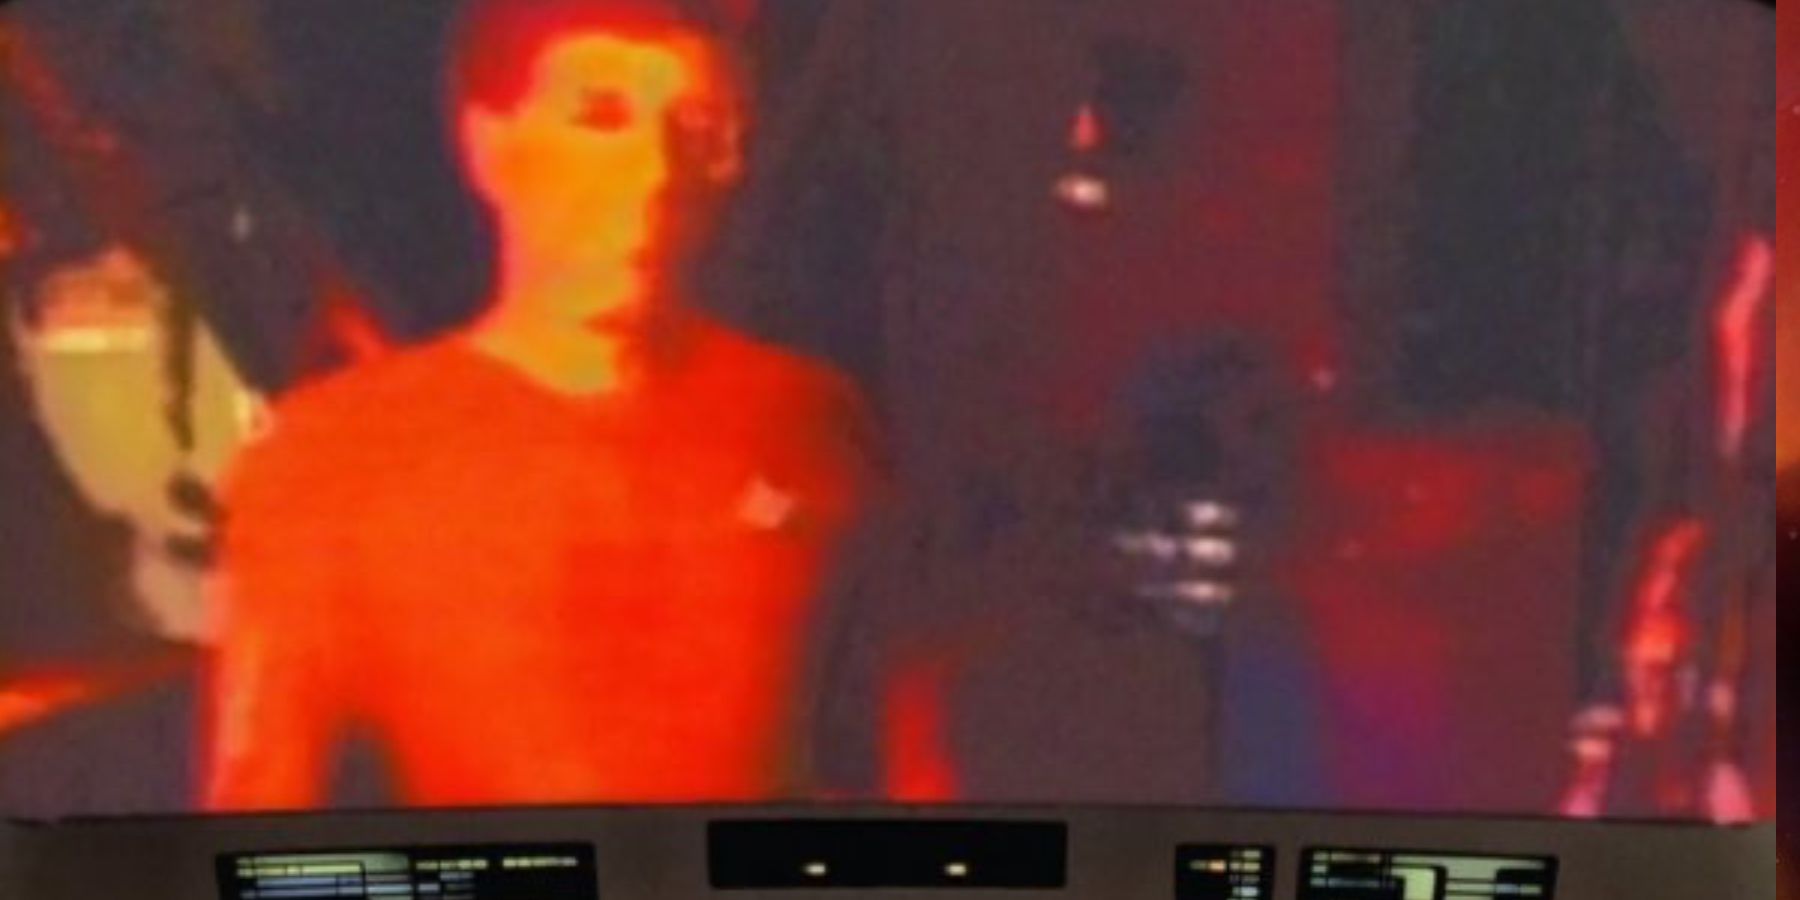 Star Trek Life sign detectors